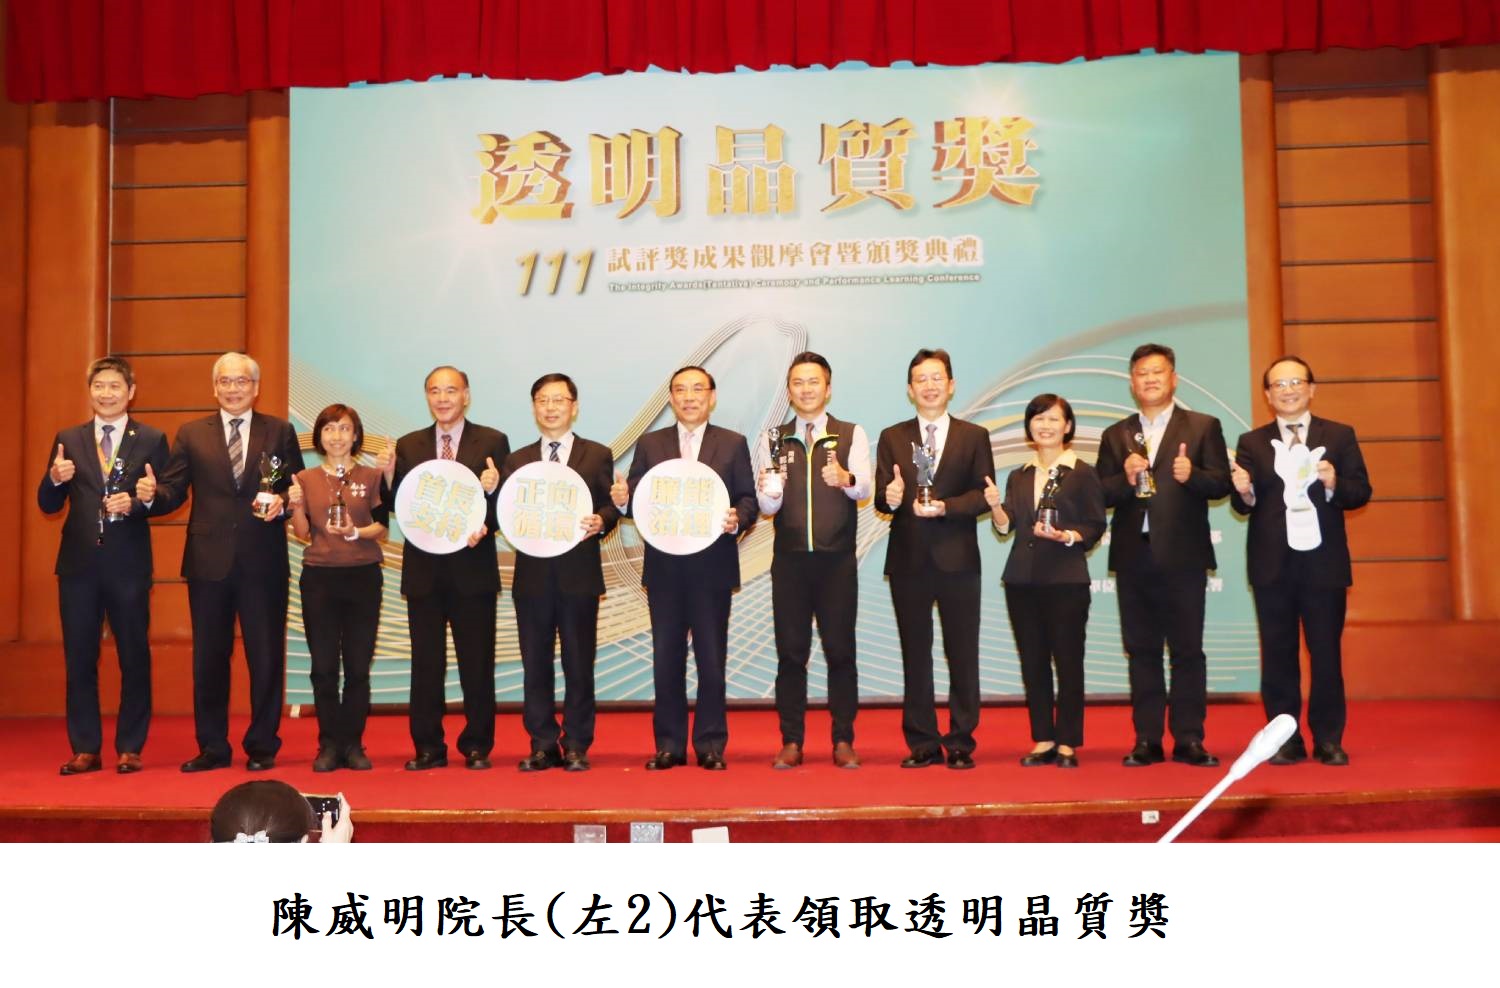 陳威明院長(左2)代表領取透明晶質獎